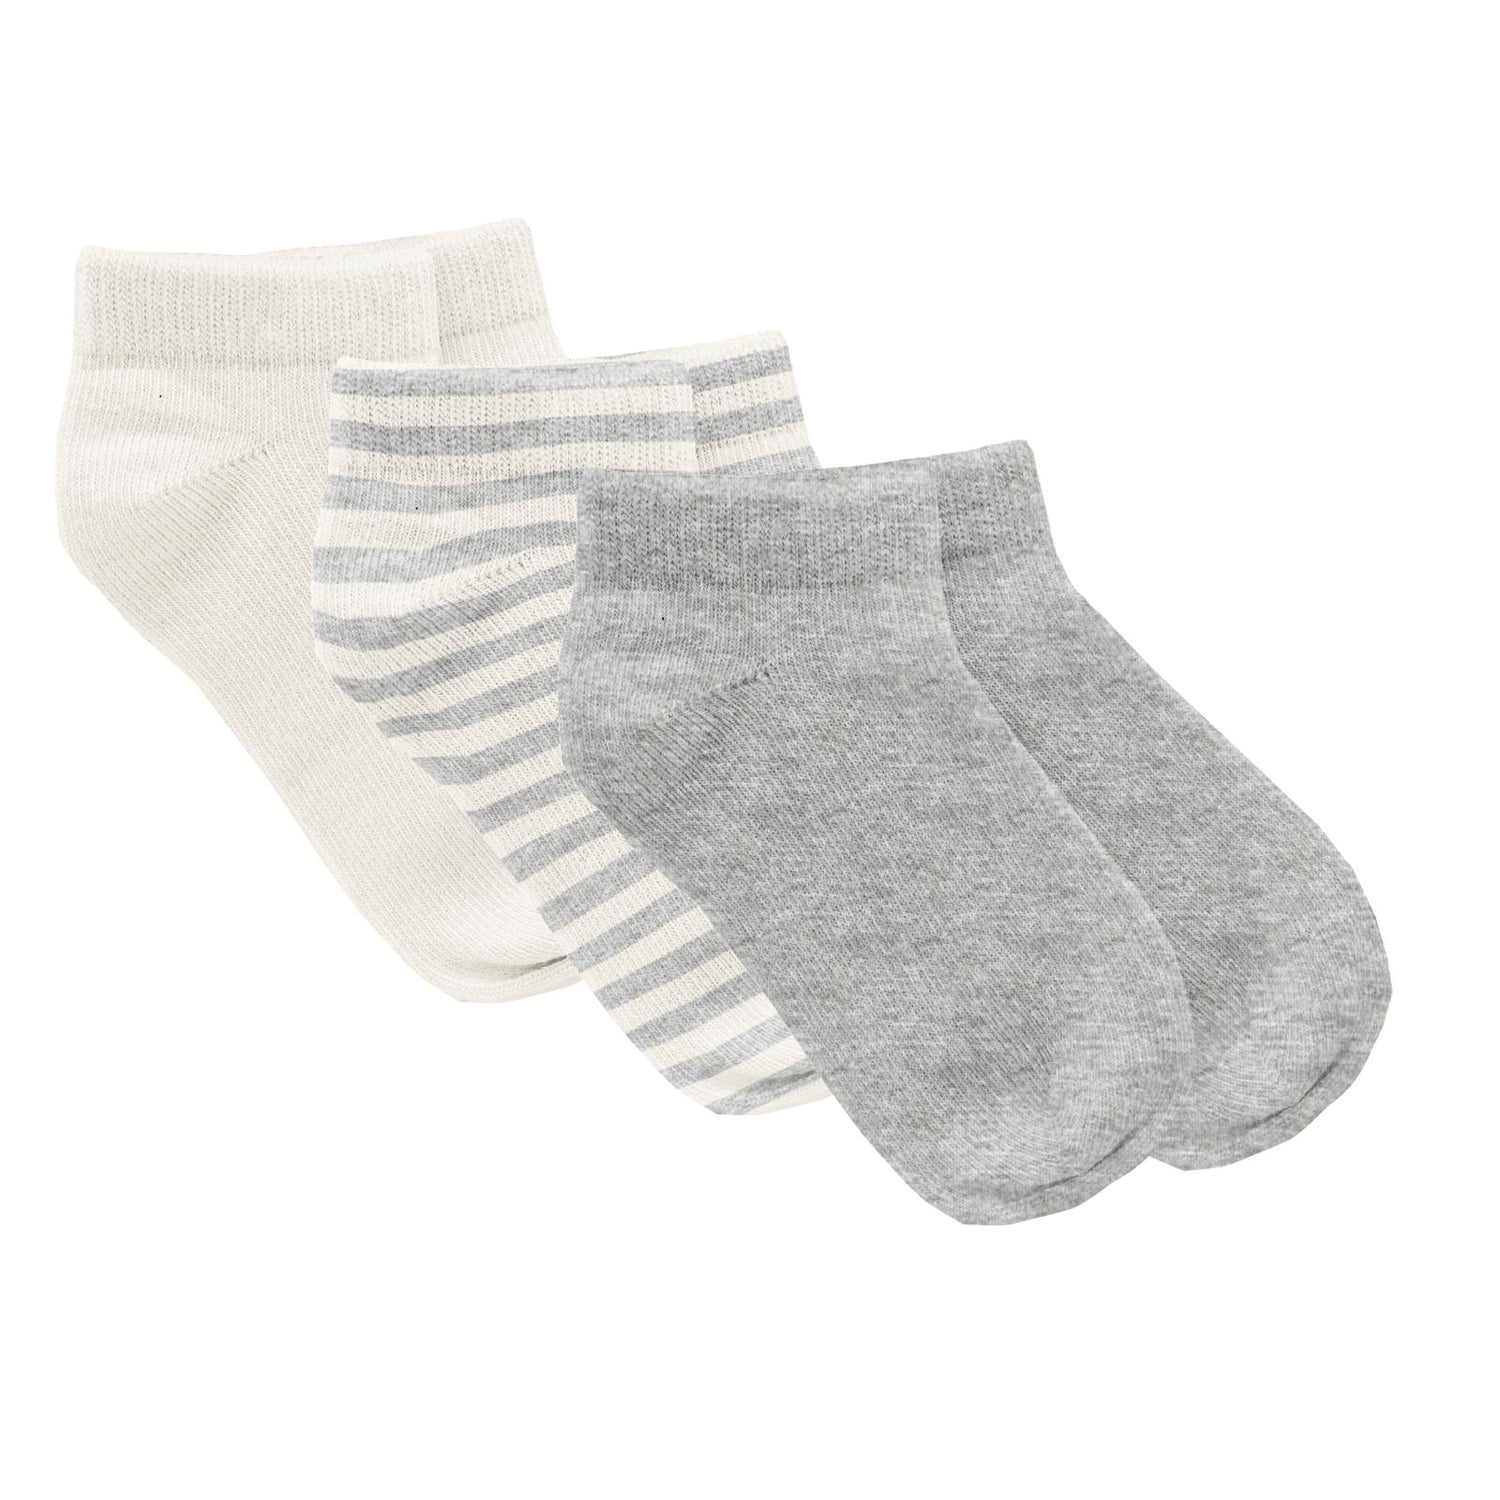 Print Ankle Socks Set of 3 in Heathered Mist, Heathered Mist Sweet Stripe & Natural